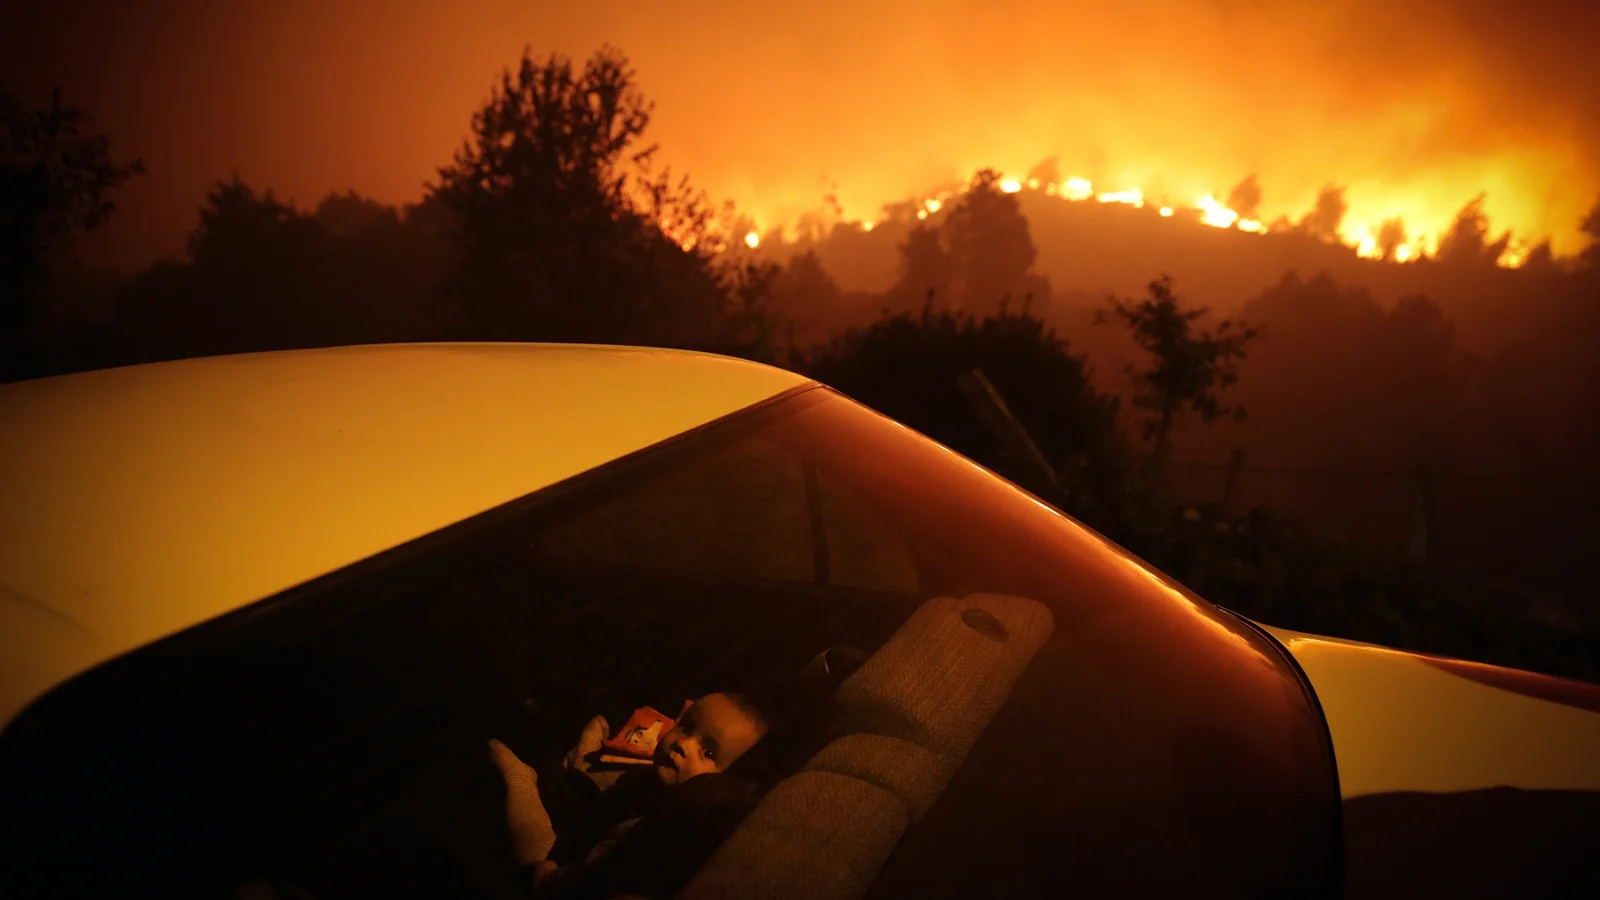 Um menino sentado dentro de um carro perto de um incêndio florestal.